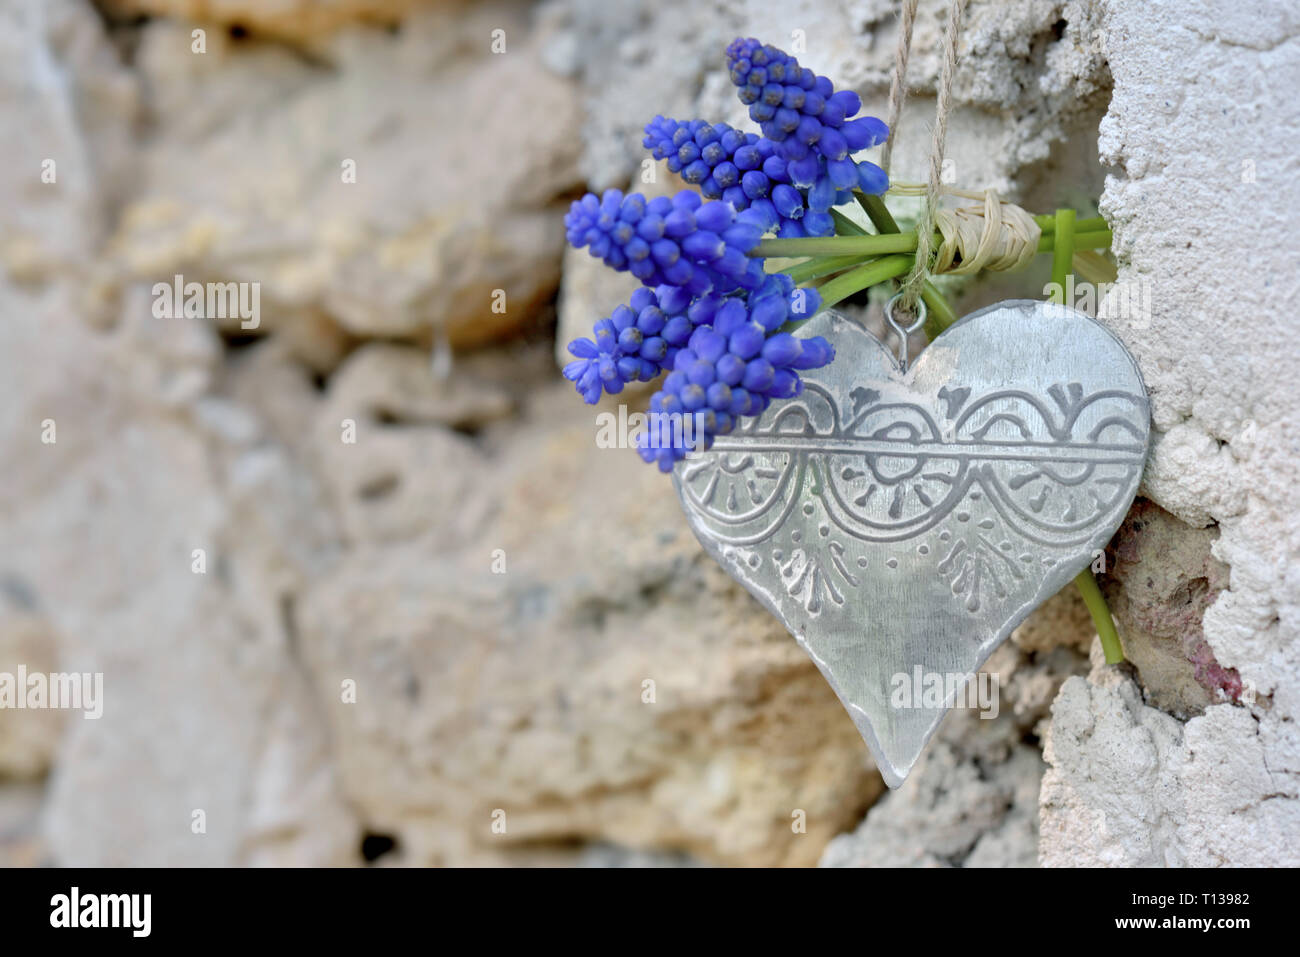 Frühling Blumen und Bügeleisen Herzen auf einer Outdoor gesteinigt Wand aufgehängt Stockfoto